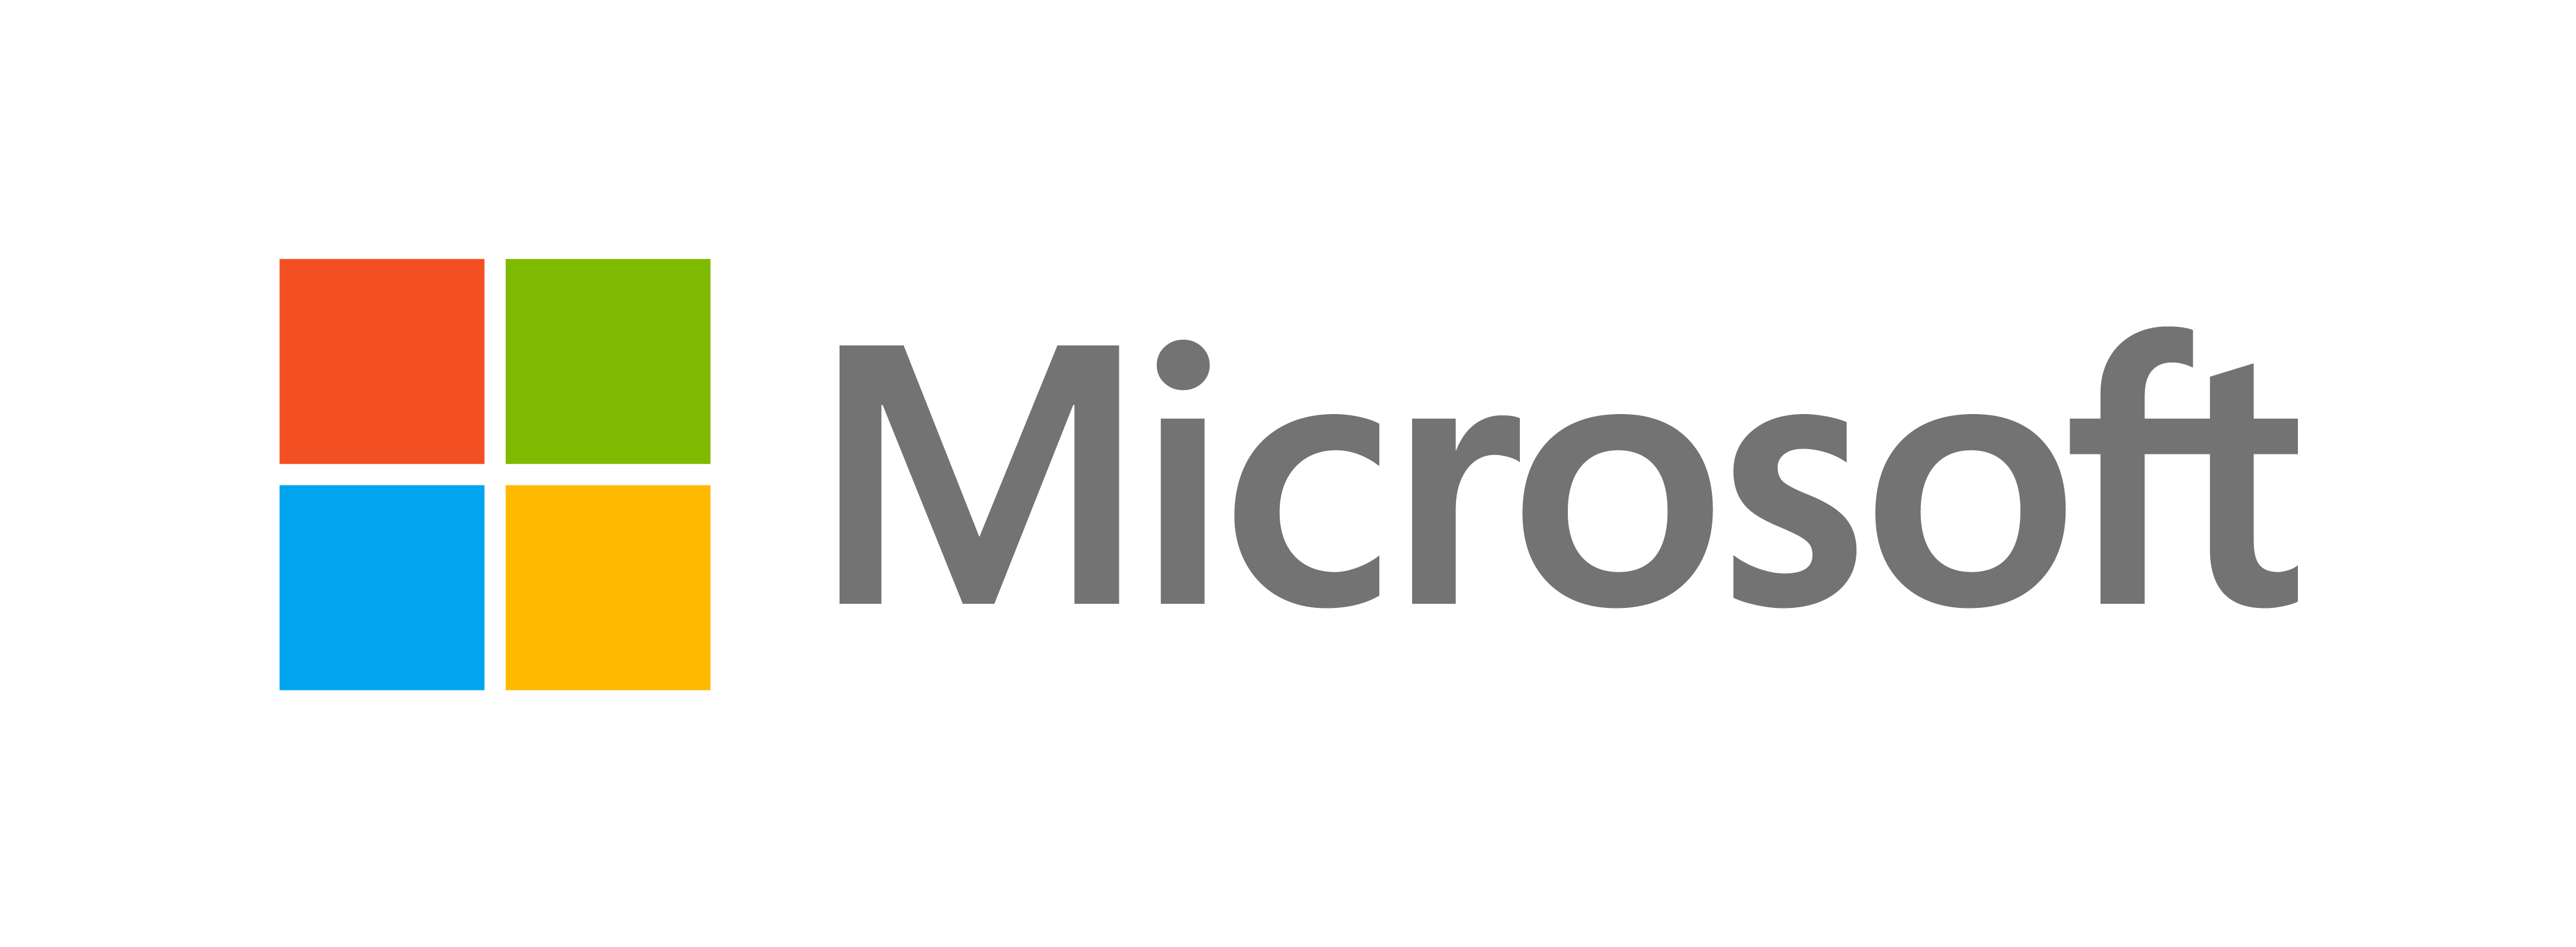 Microsoft razkriva nov videz - uradni Microsoftov blog